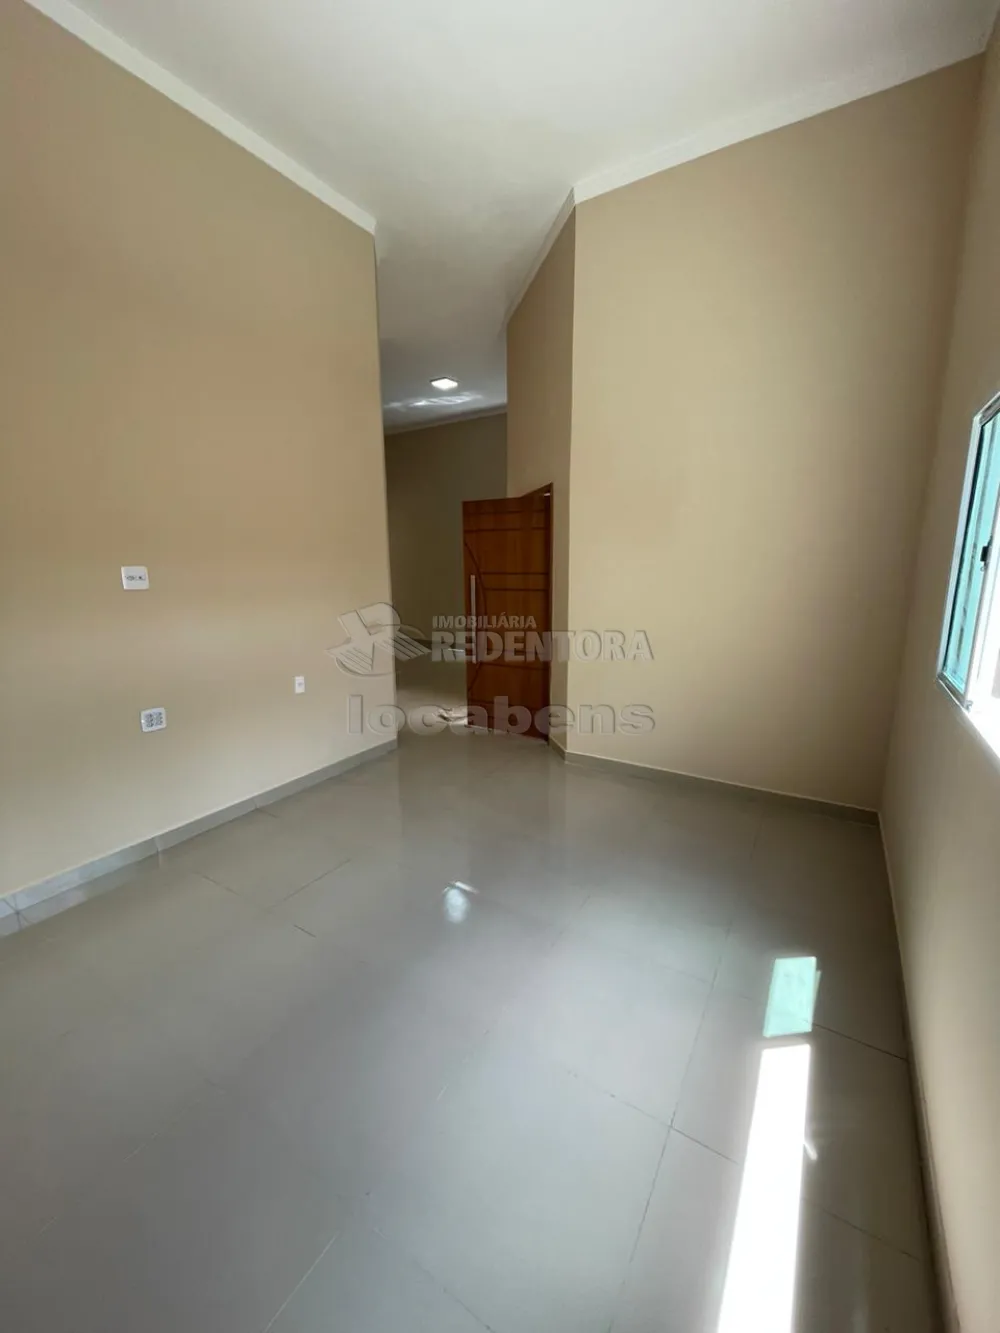 Comprar Casa / Padrão em Mirassol R$ 450.000,00 - Foto 6